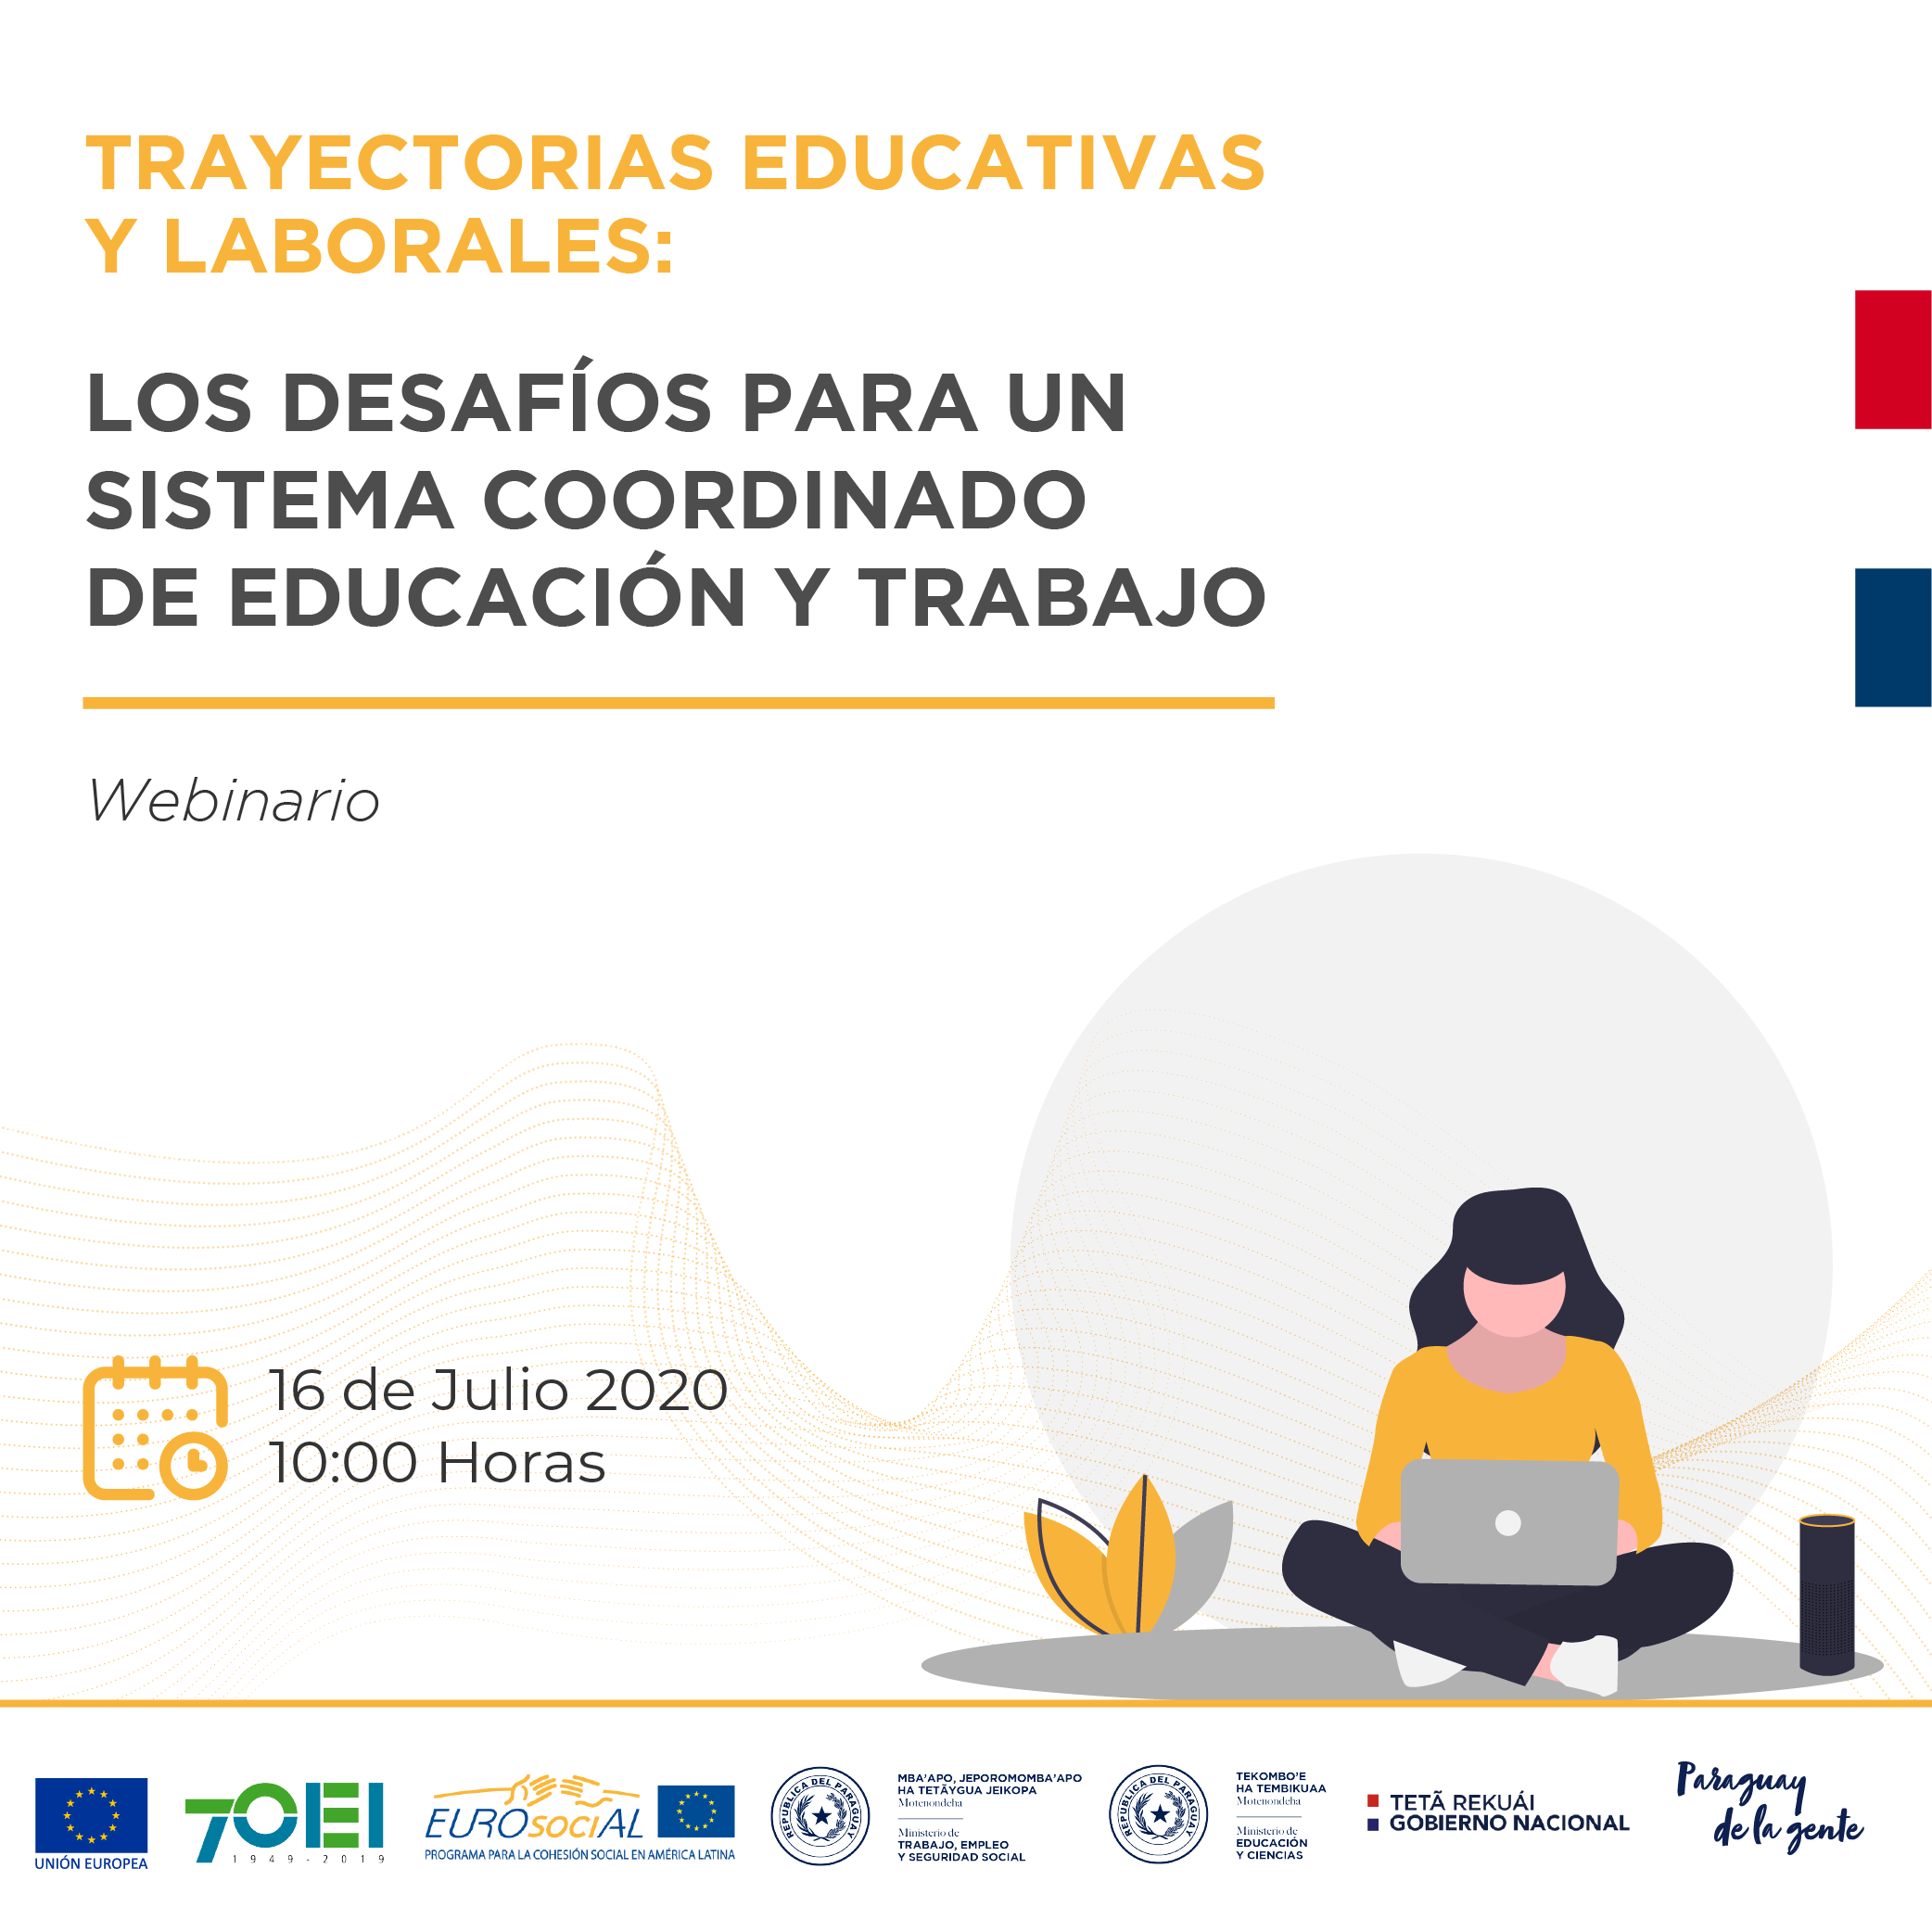 Seminario Internacional “Trayectorias Educativas y Laborales: Los desafíos para un sistema coordinado de educación y trabajo”